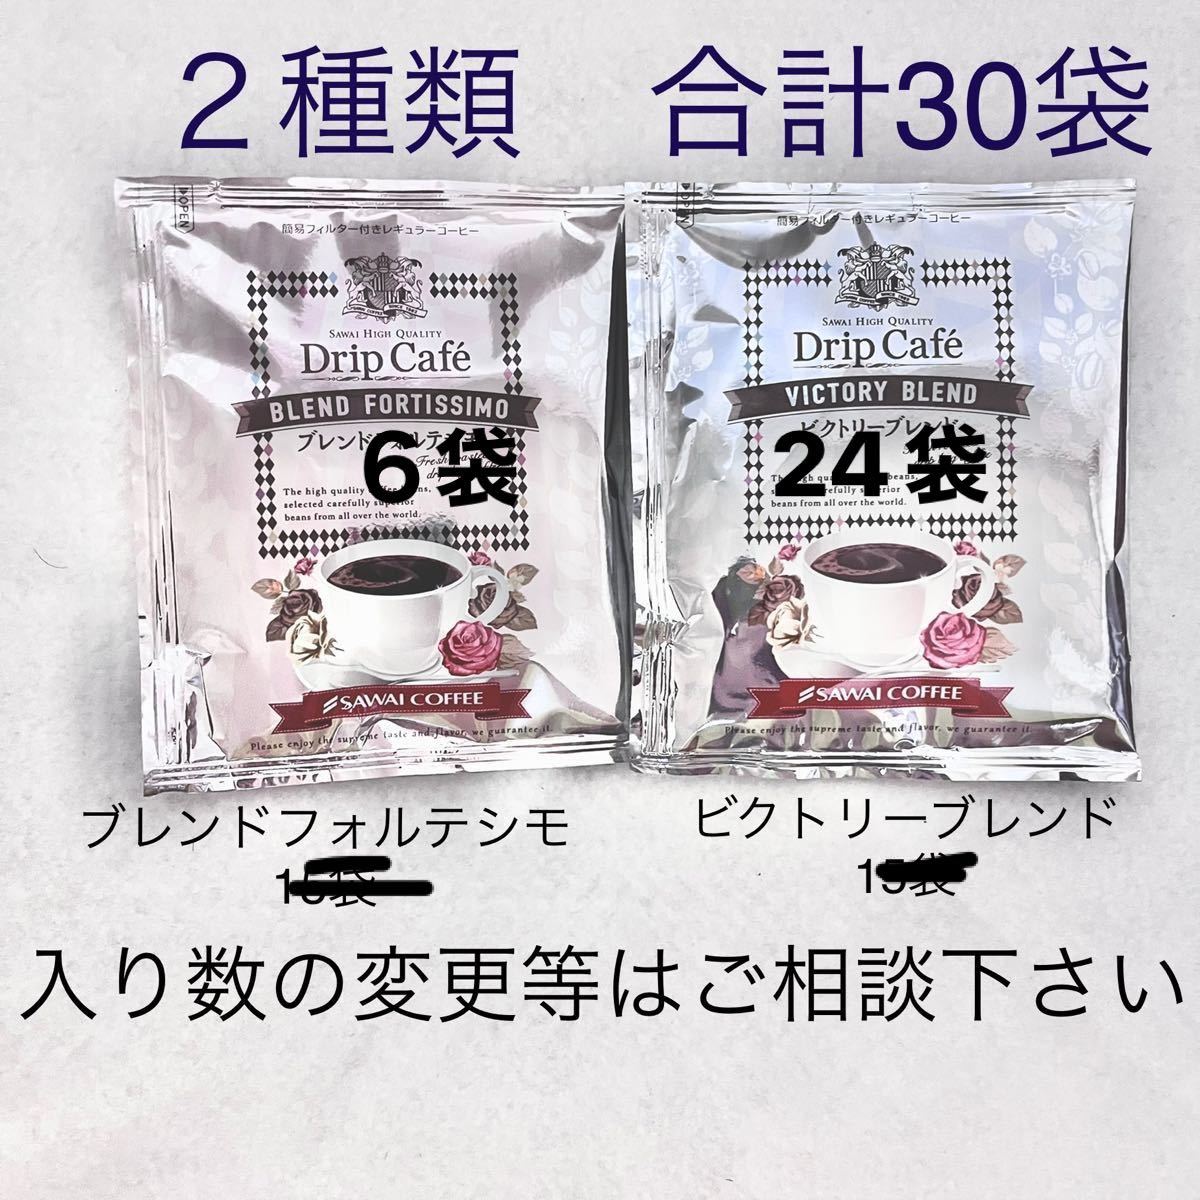 チープ ビクトリーブレンド ブレンドフォルテシモ 澤井珈琲 ドリップ コーヒー 30袋